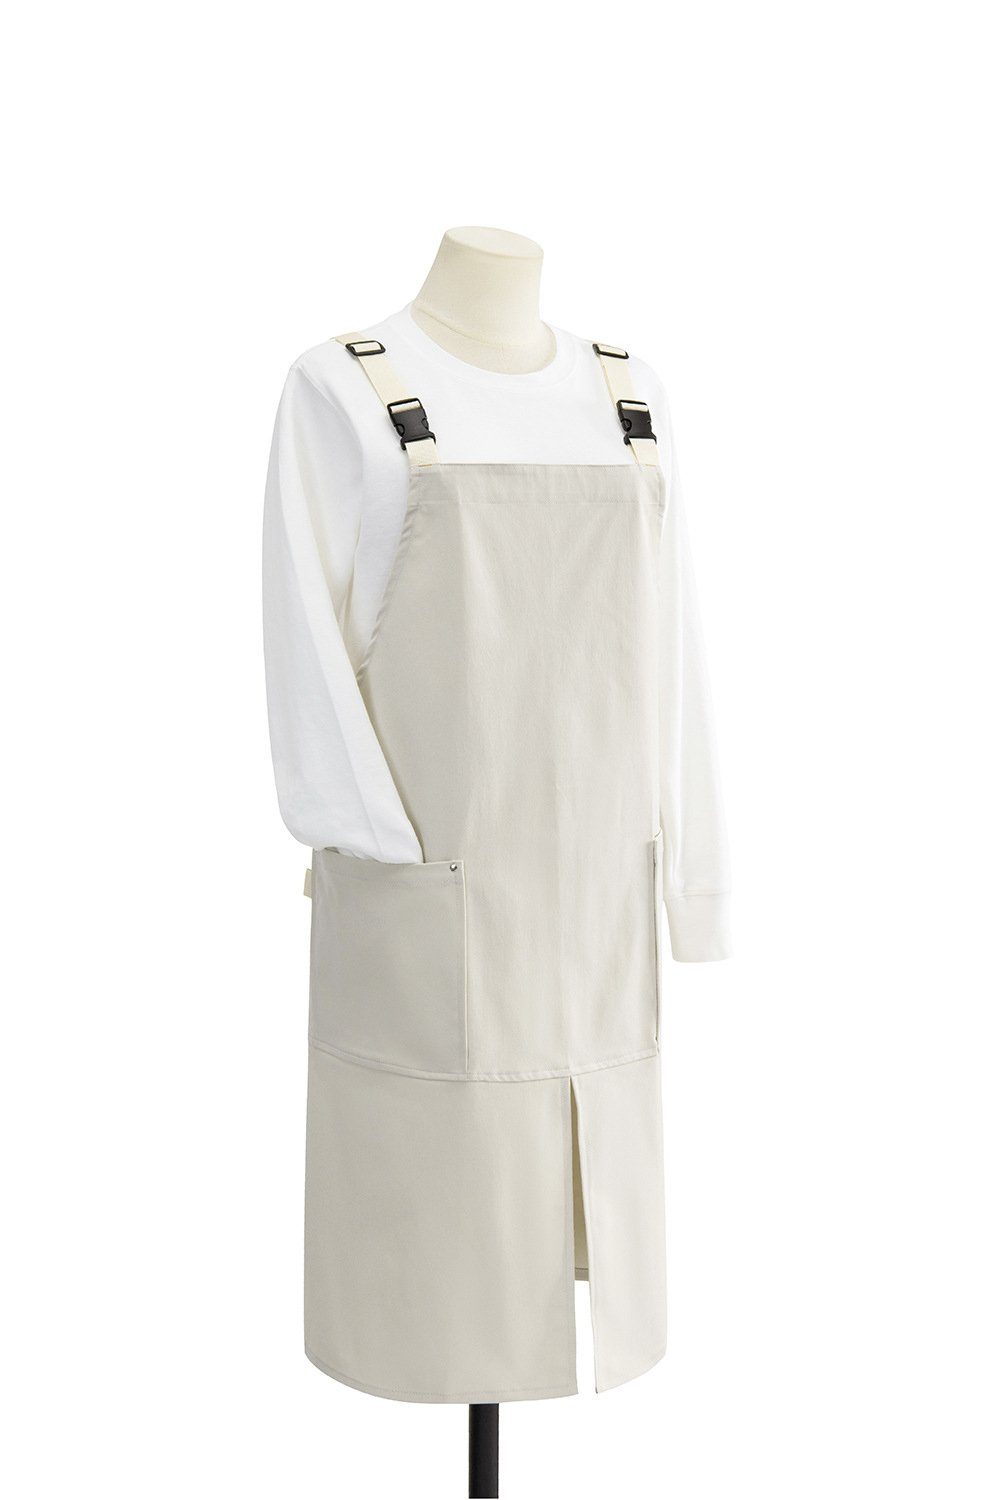 BlauCoastal Kochschürze Leinenschürze mit Taschen, Damen Herren Grill Malerei Kochen verstellbare Schürze, Unisex